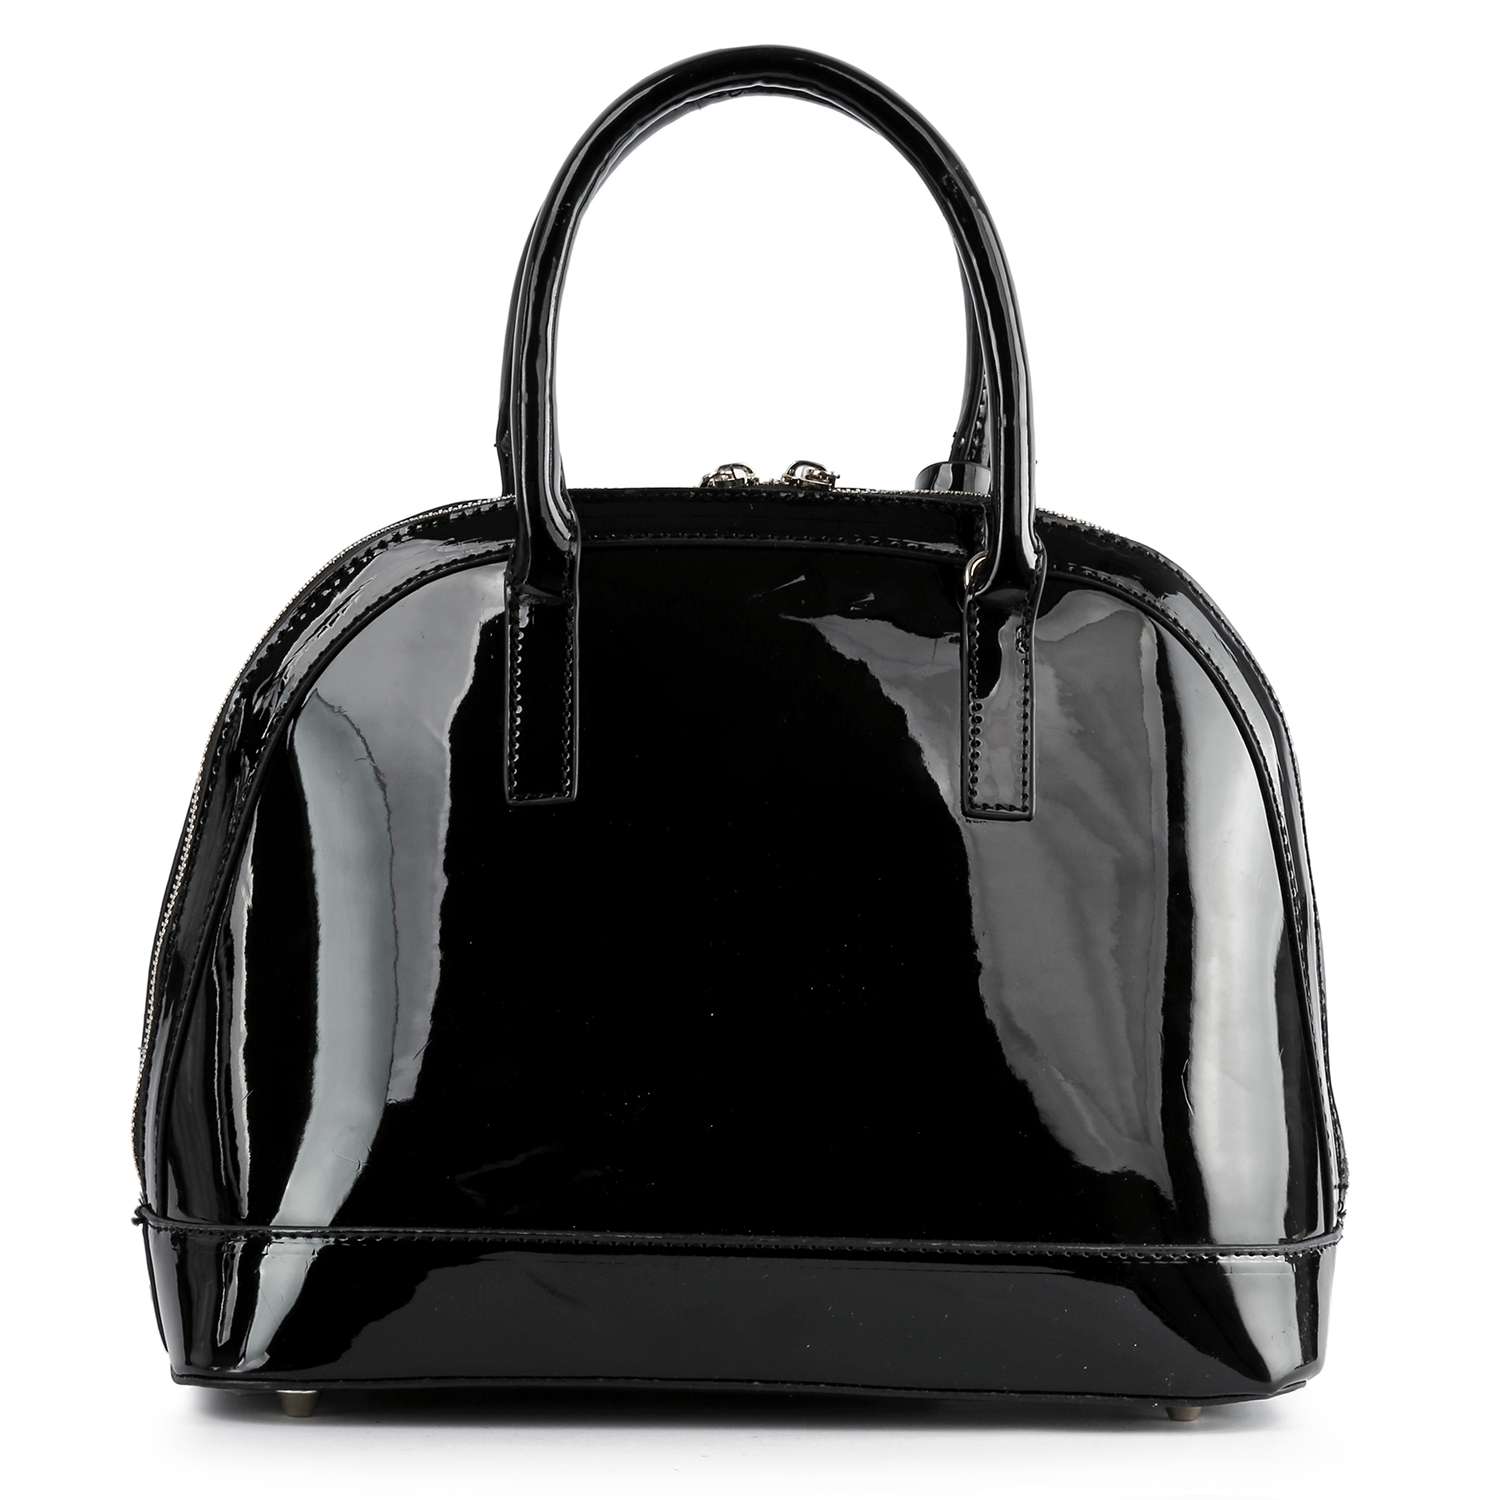 Dazzling Stone Bowler Handbag – handbagexpress